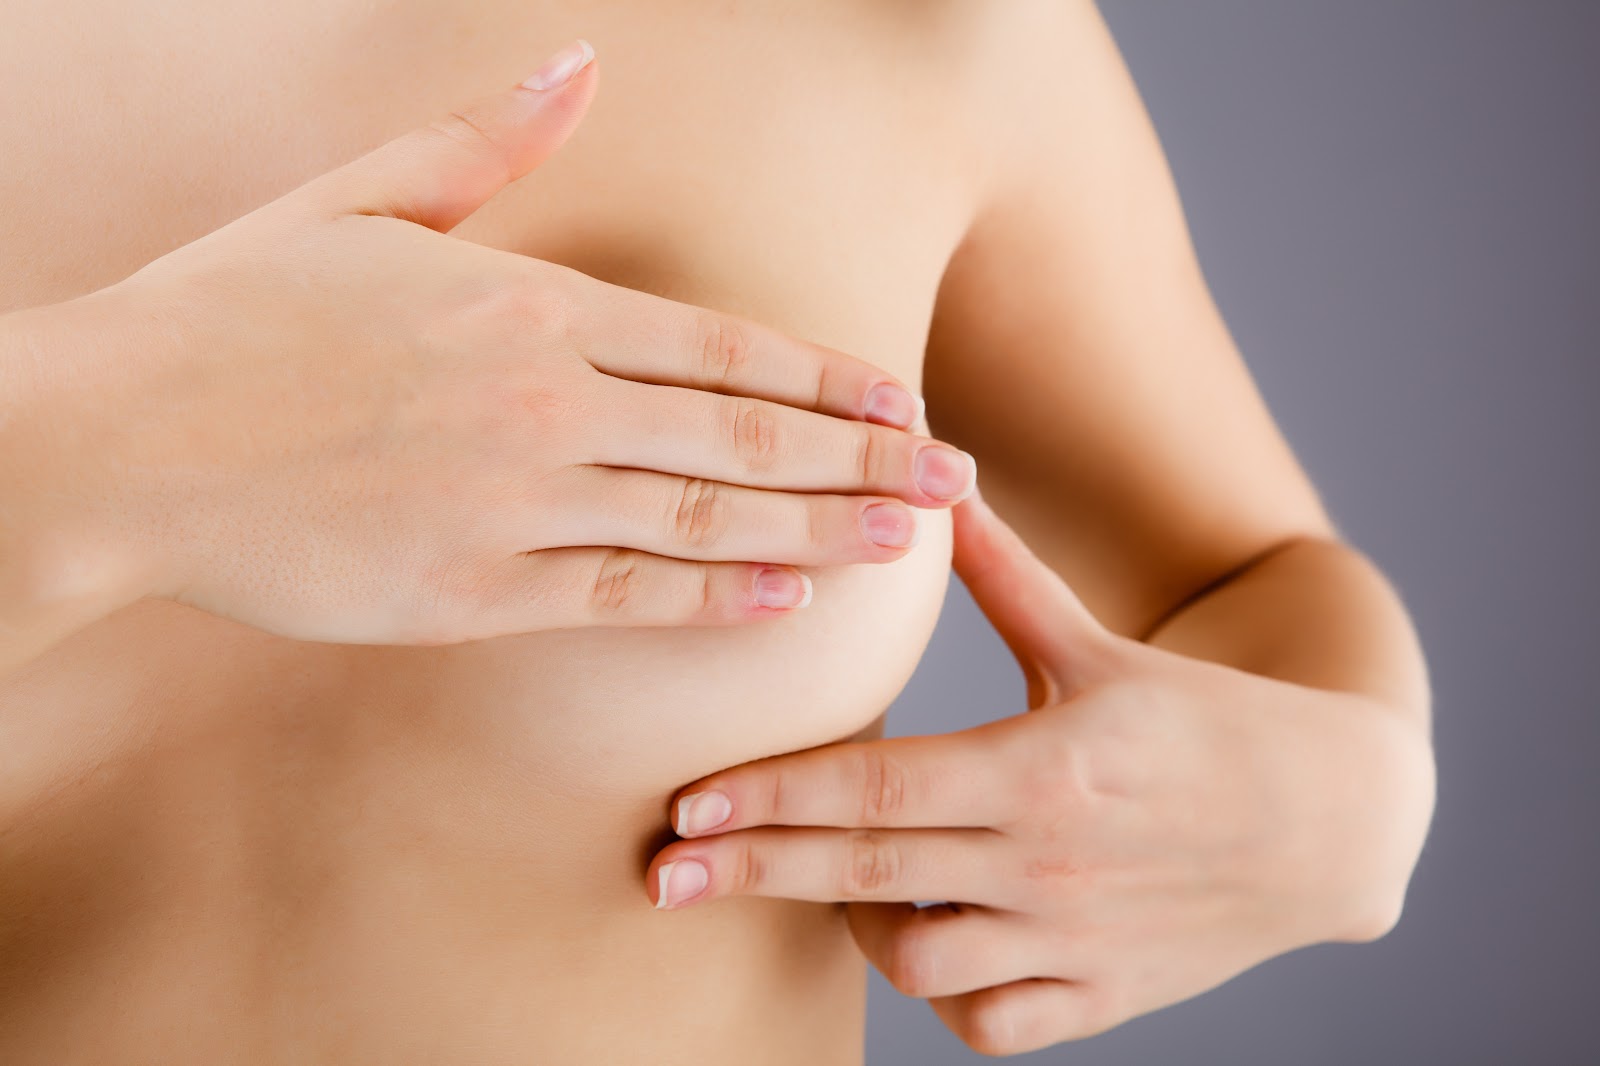 Khoảng 3 – 4 tuần sau nâng ngực bầu ngực sẽ dần hồi phục